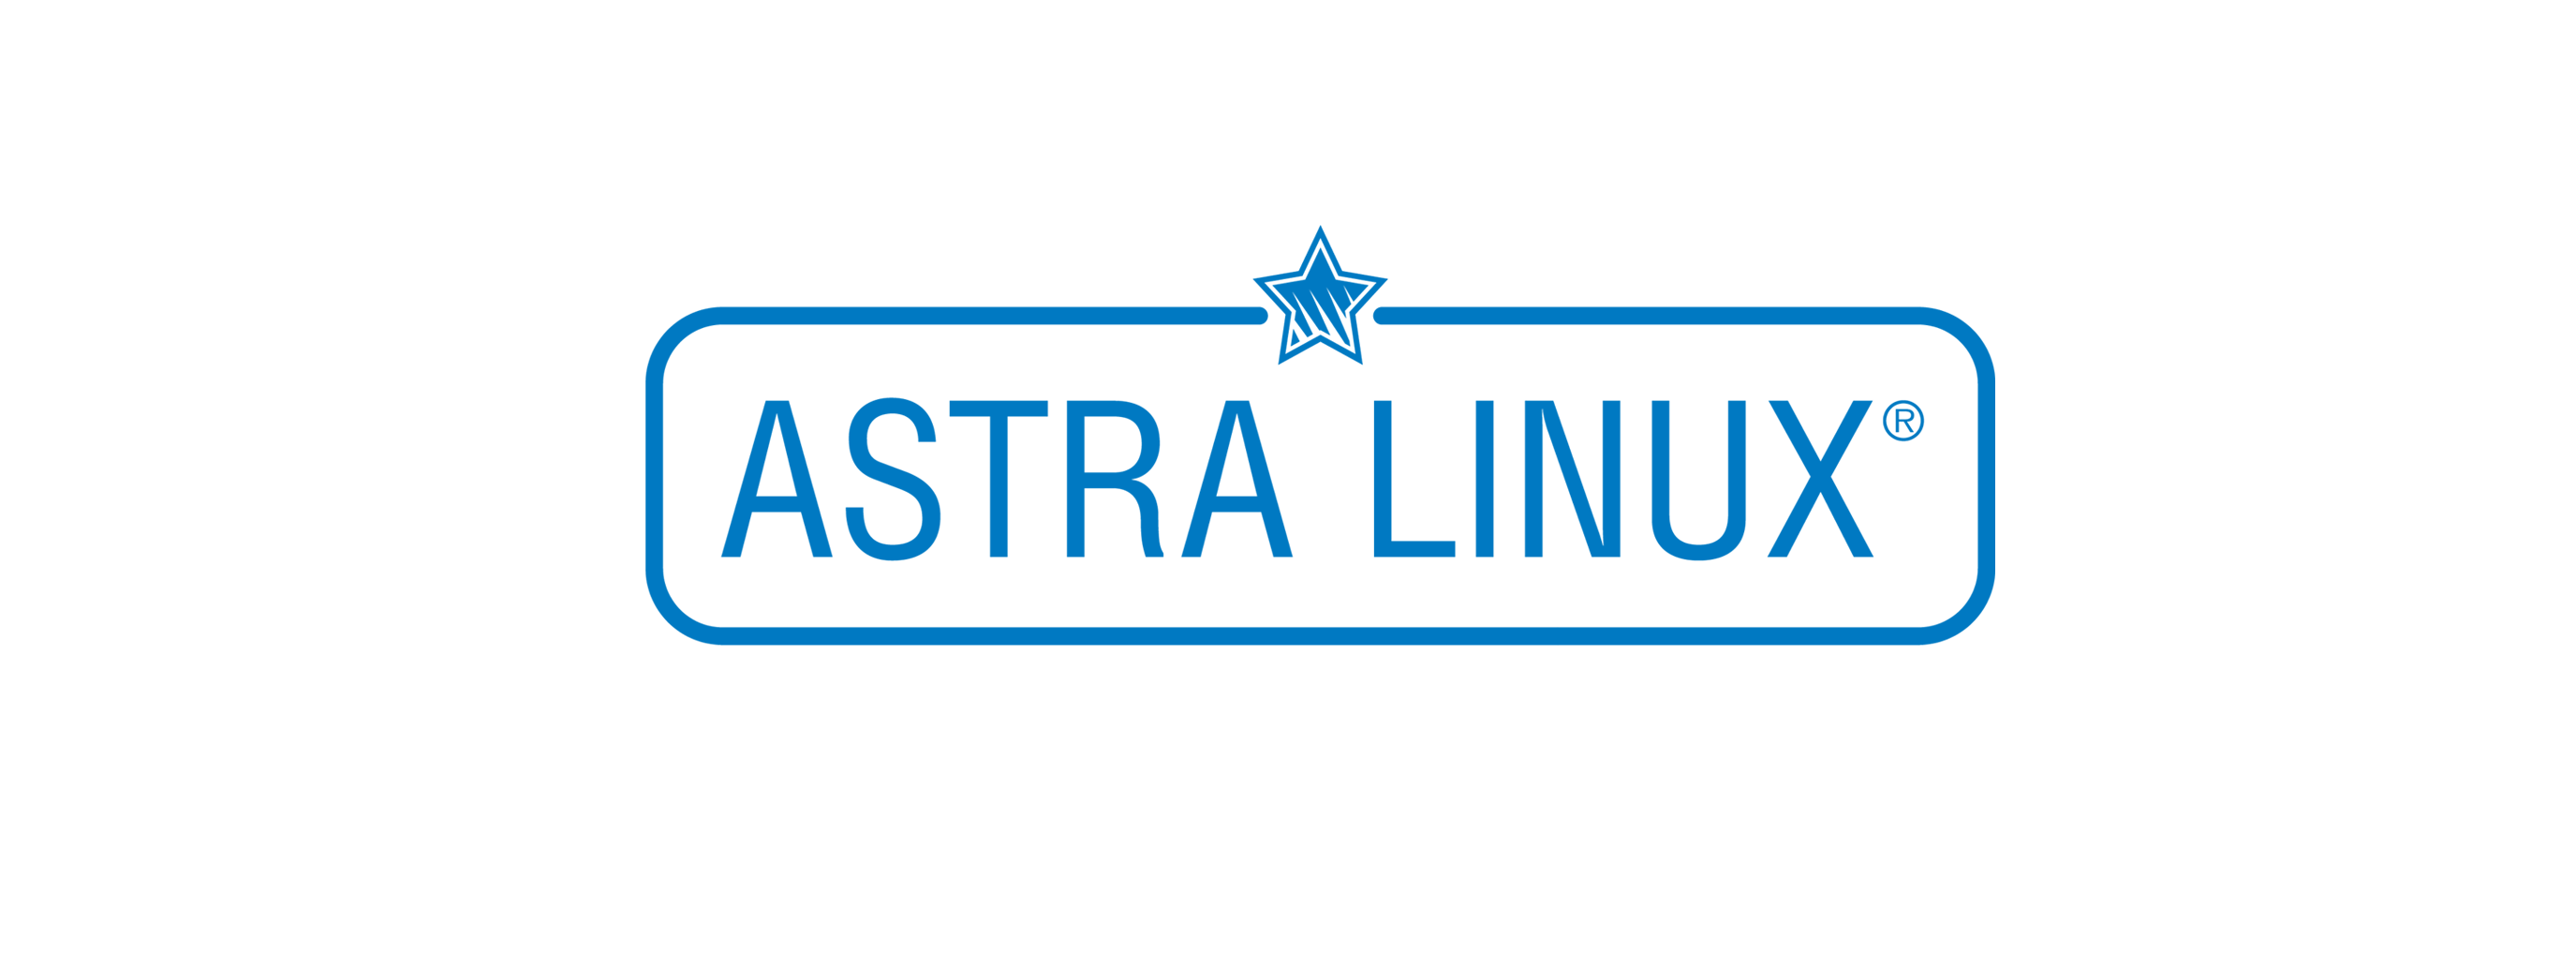 Лицензия РусБИТех Astra Linux Special Edition (очередное обновление 1.7), уровень защищенности Максимальный (Смоленск), РУСБ.10015-01 (ФСТЭК), Russian, на 24 месяца базовая лицензия для виртуального сервера, электронный ключ (OS2101X8617DIG000VS02-SO24)